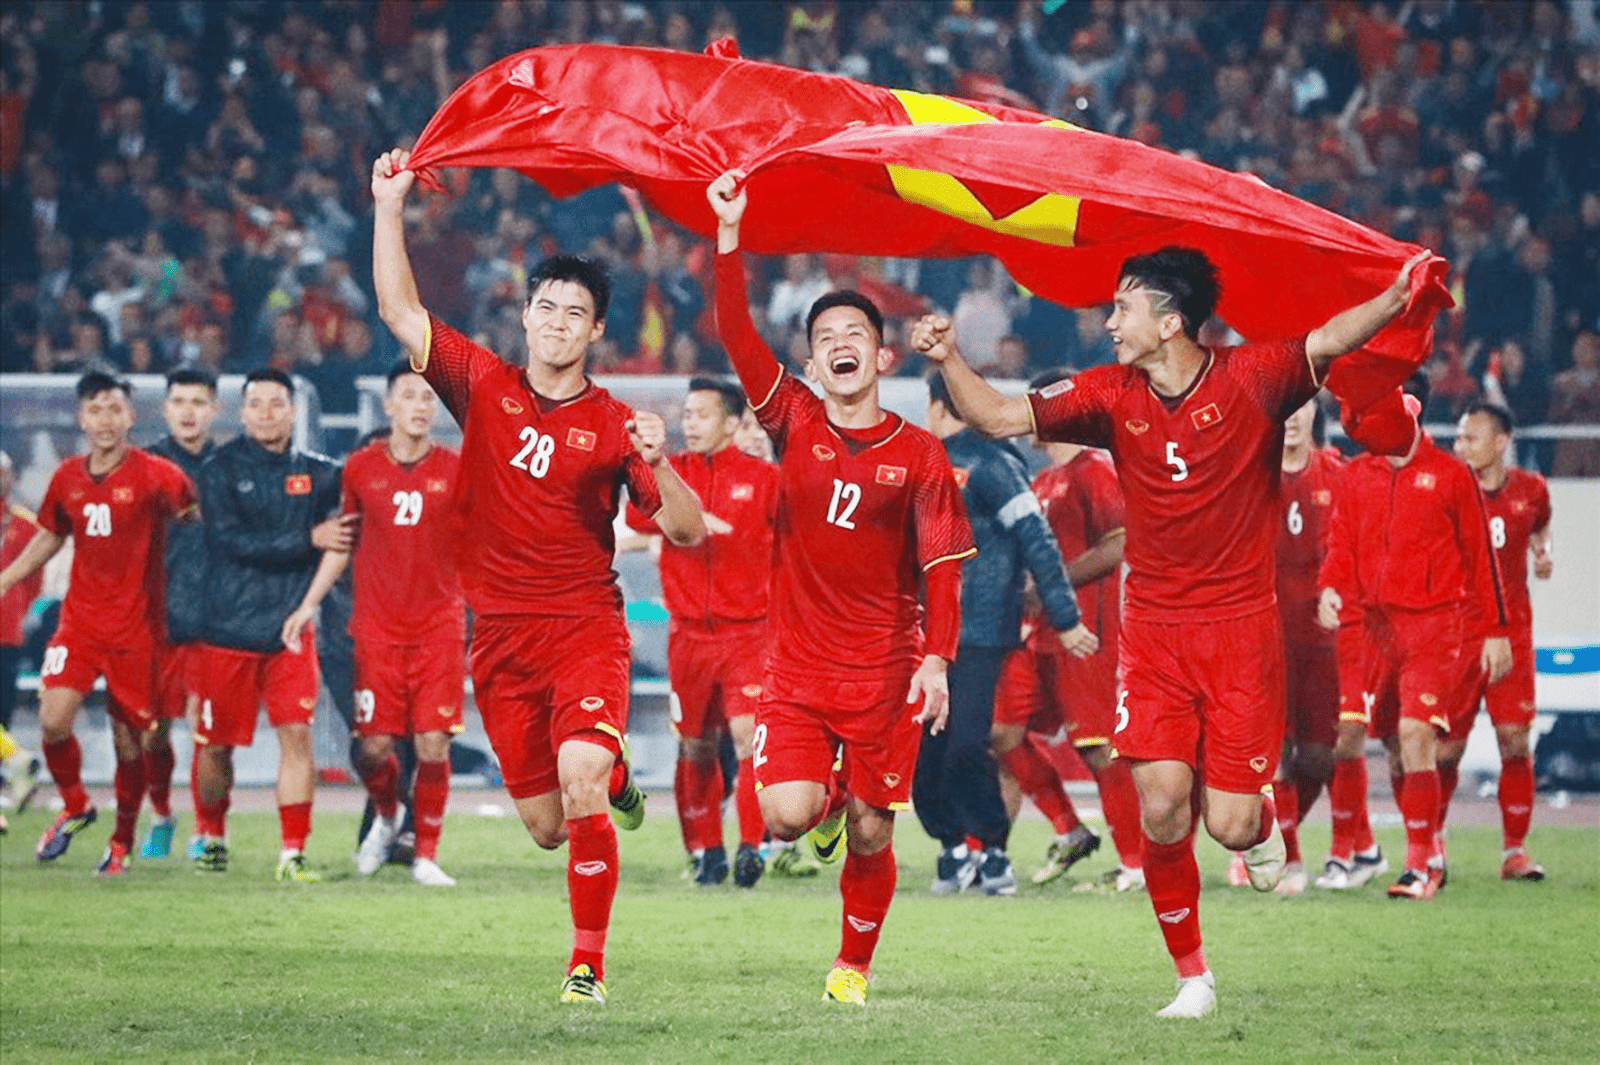 Xem bóng đá trực tiếp Việt Nam tốt nhất hiện nay tại 90phutlive.com